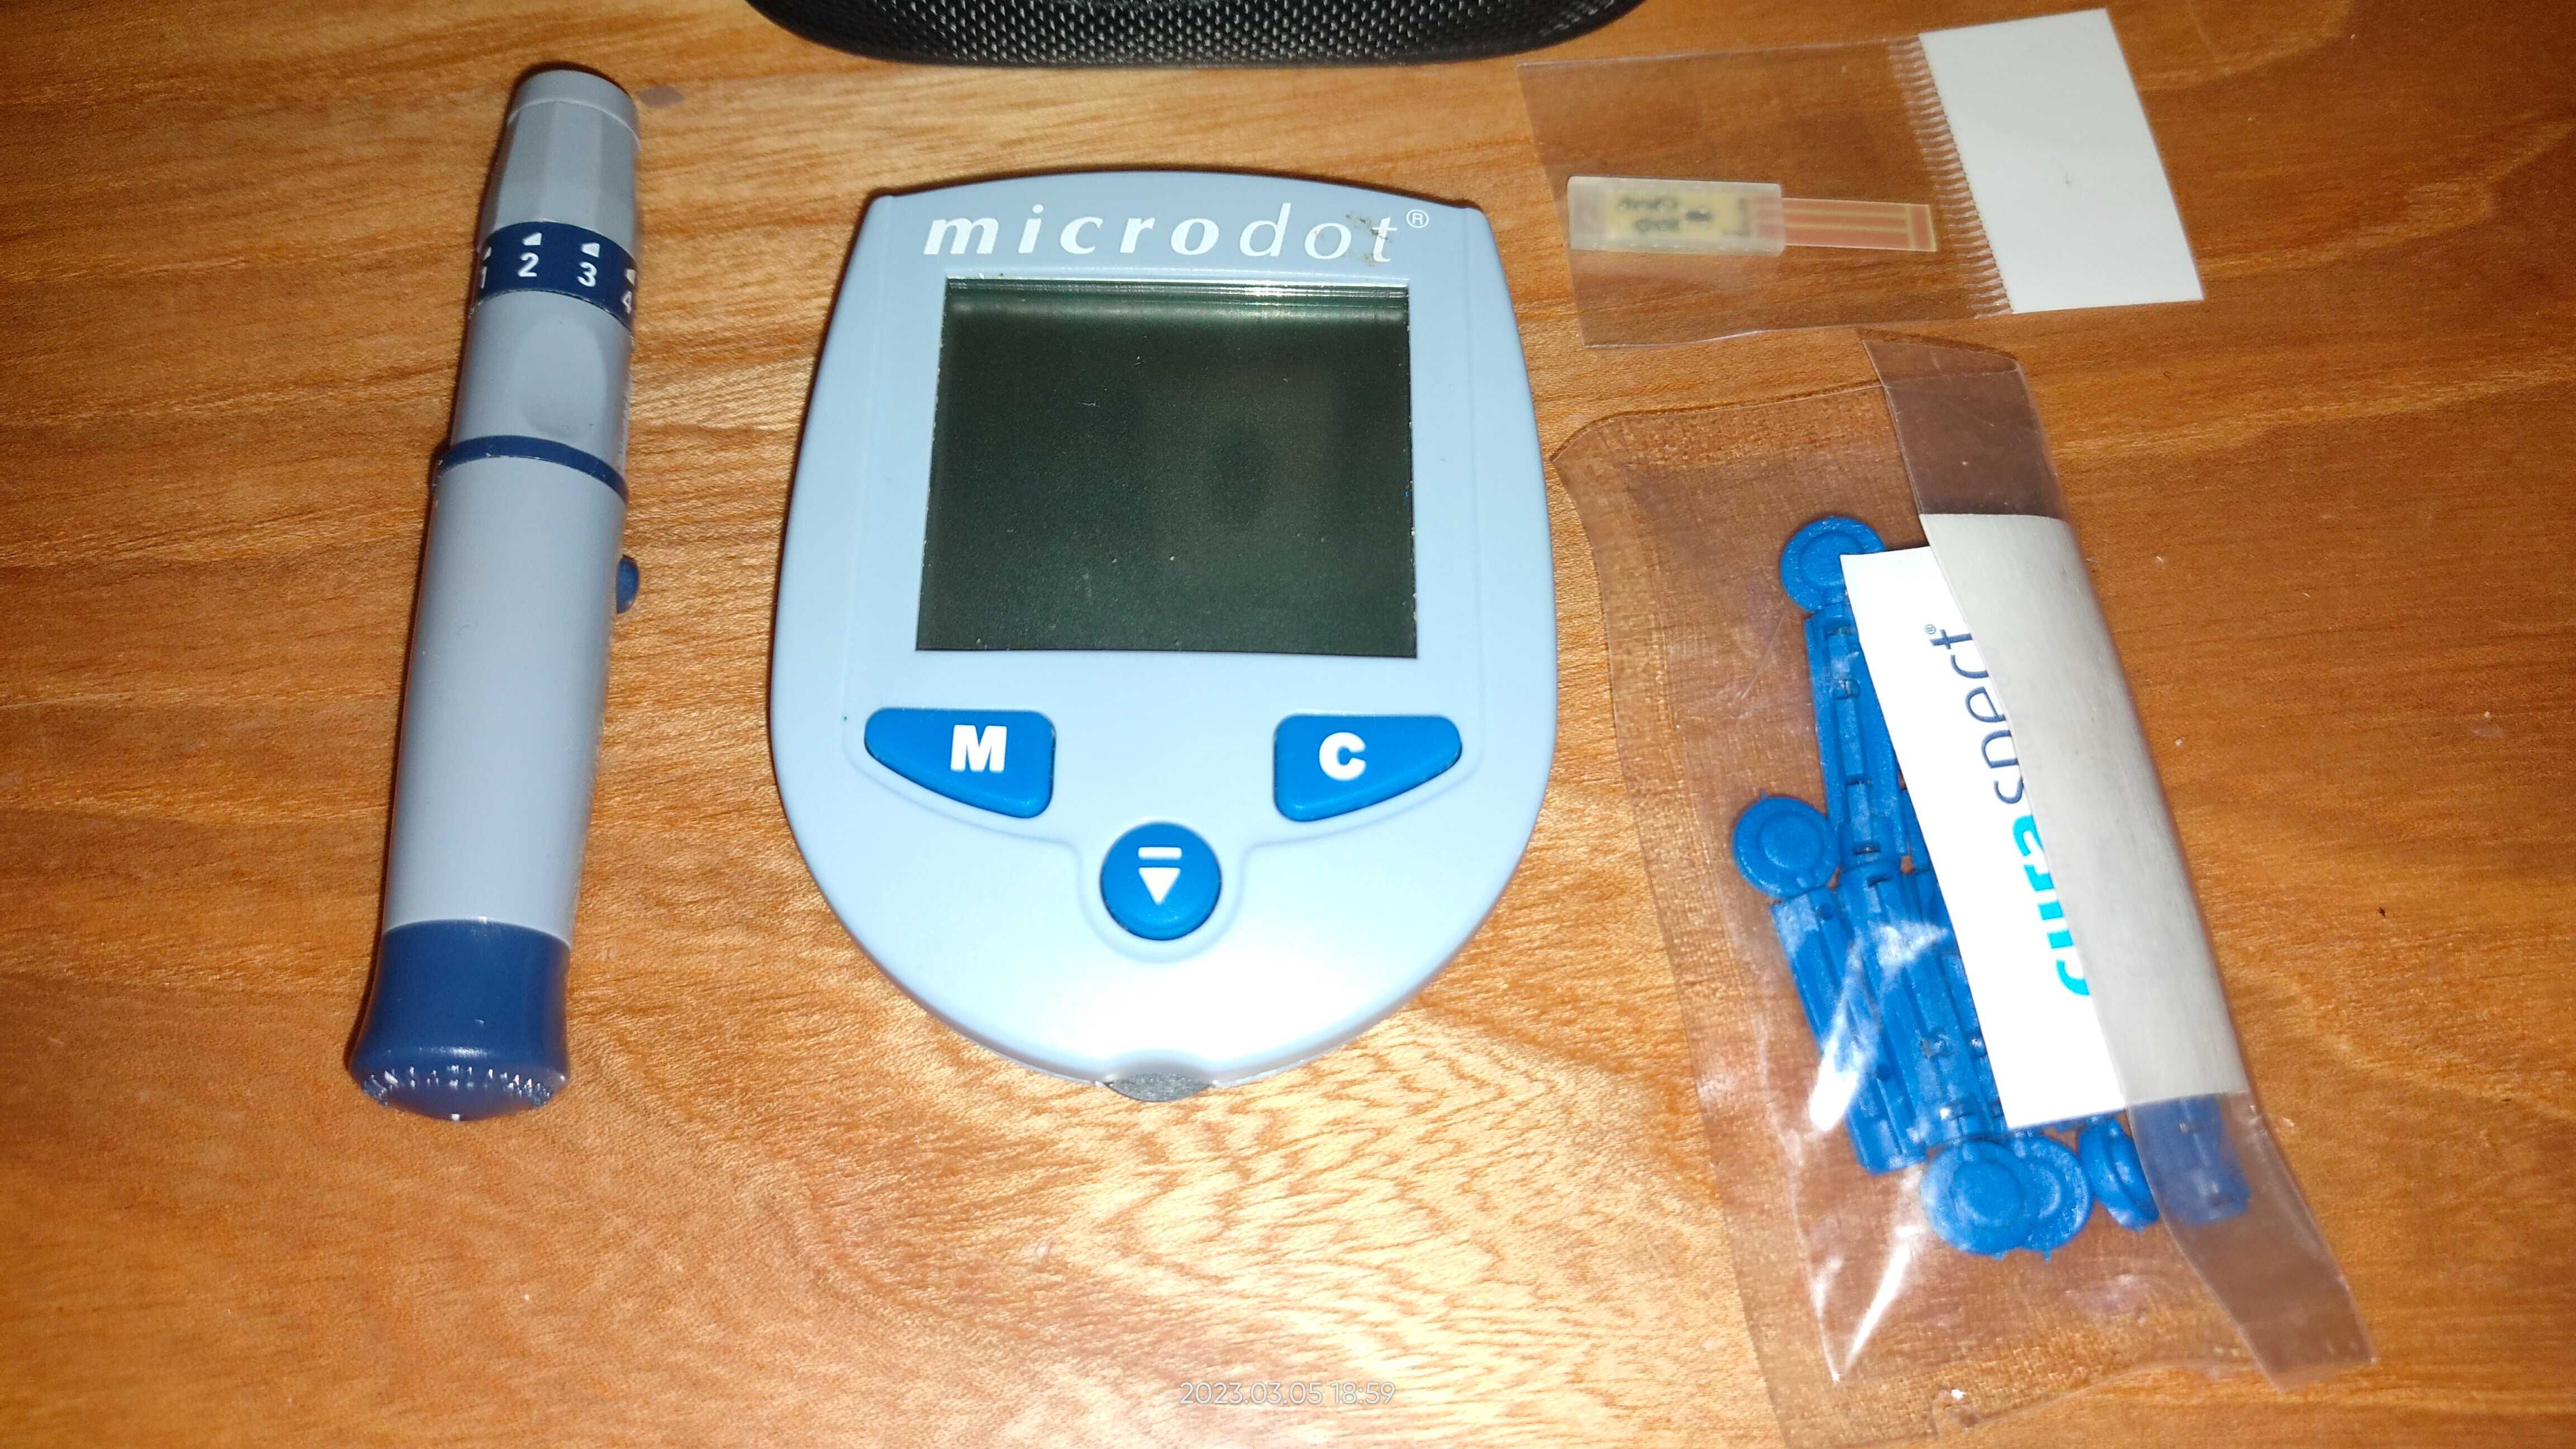 Glukometr microdot + nakuwacz komplet jak nowy